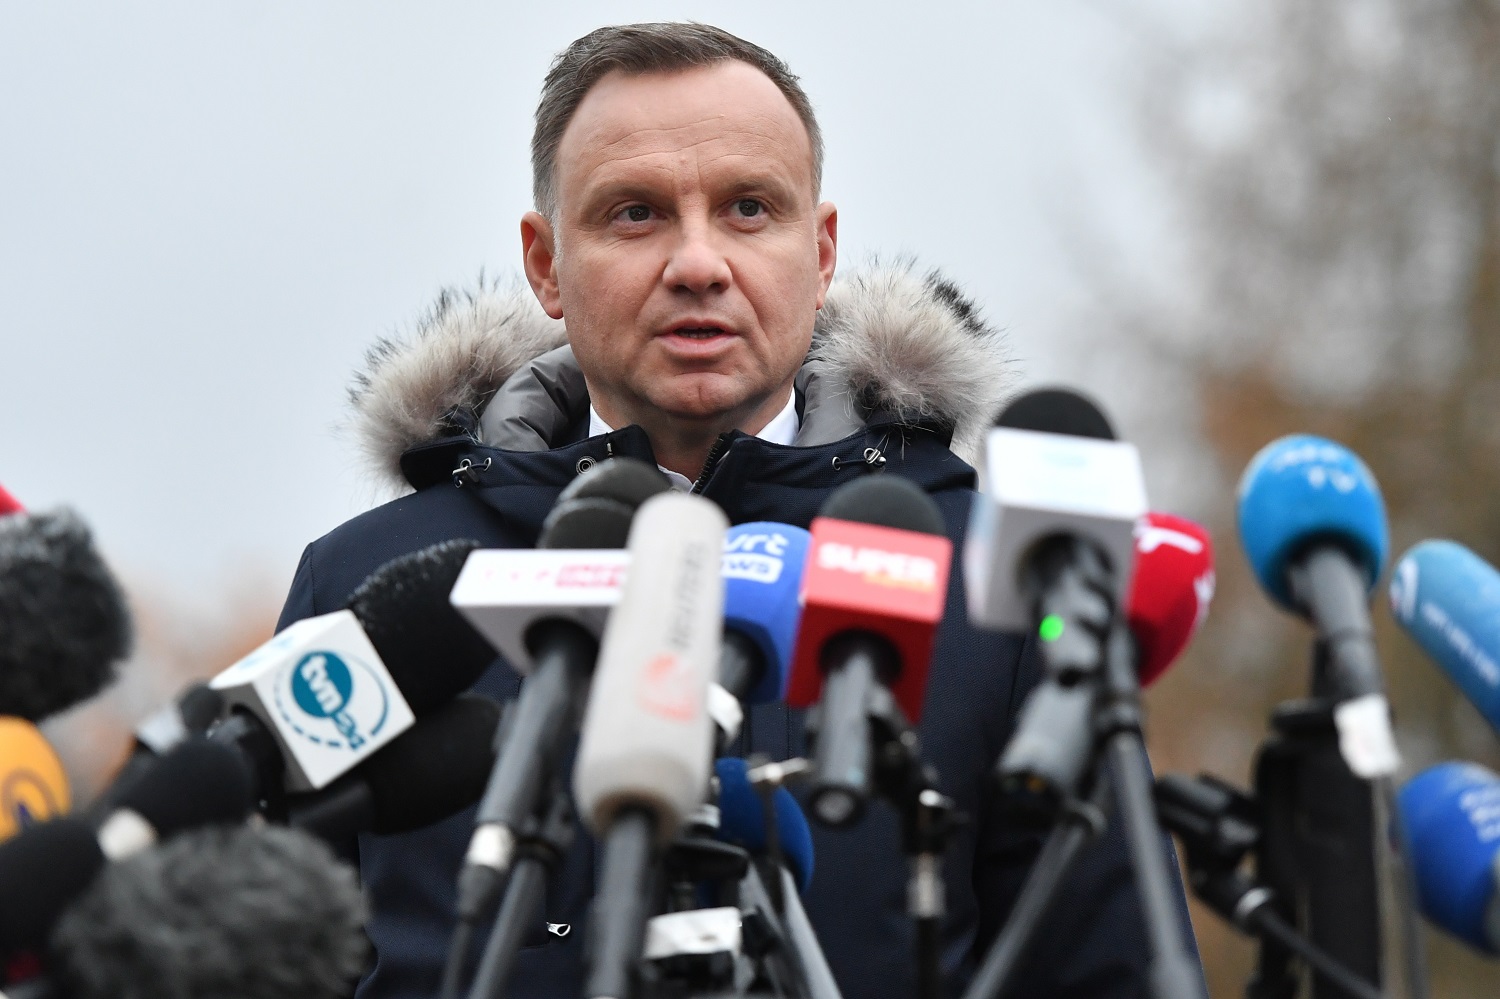 Lenkijos prezidentas: premjero žodžiai apie ginklus Ukrainai buvo neteisingai interpretuoti